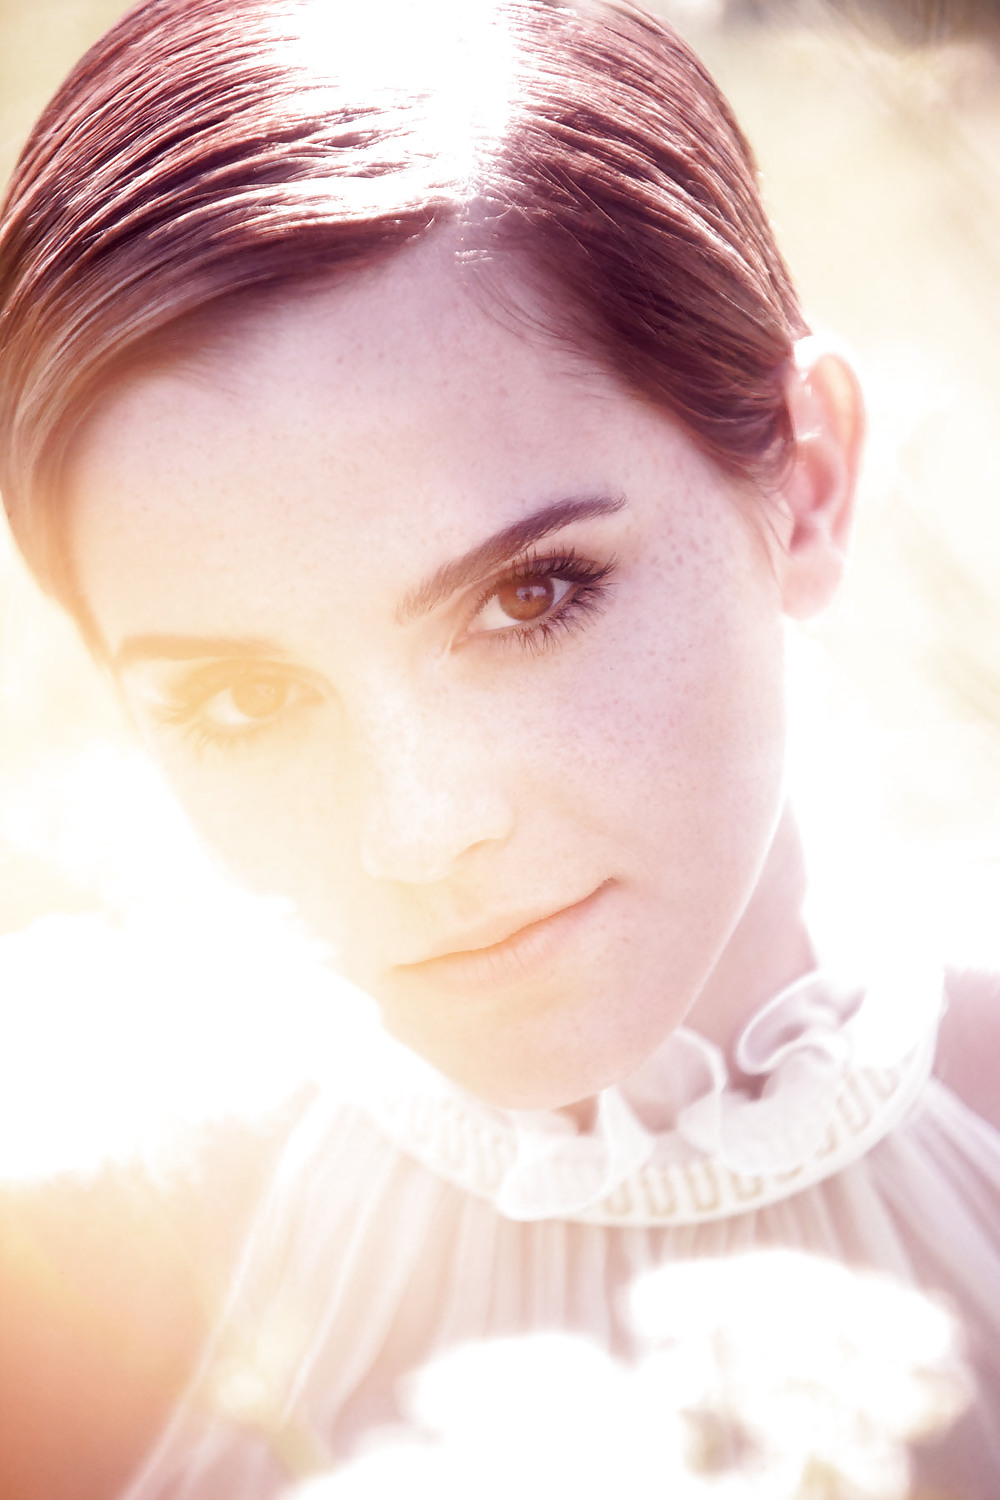 Schönsten Emma Watson Pic Und Gesicht Aller Zeiten! #17724422